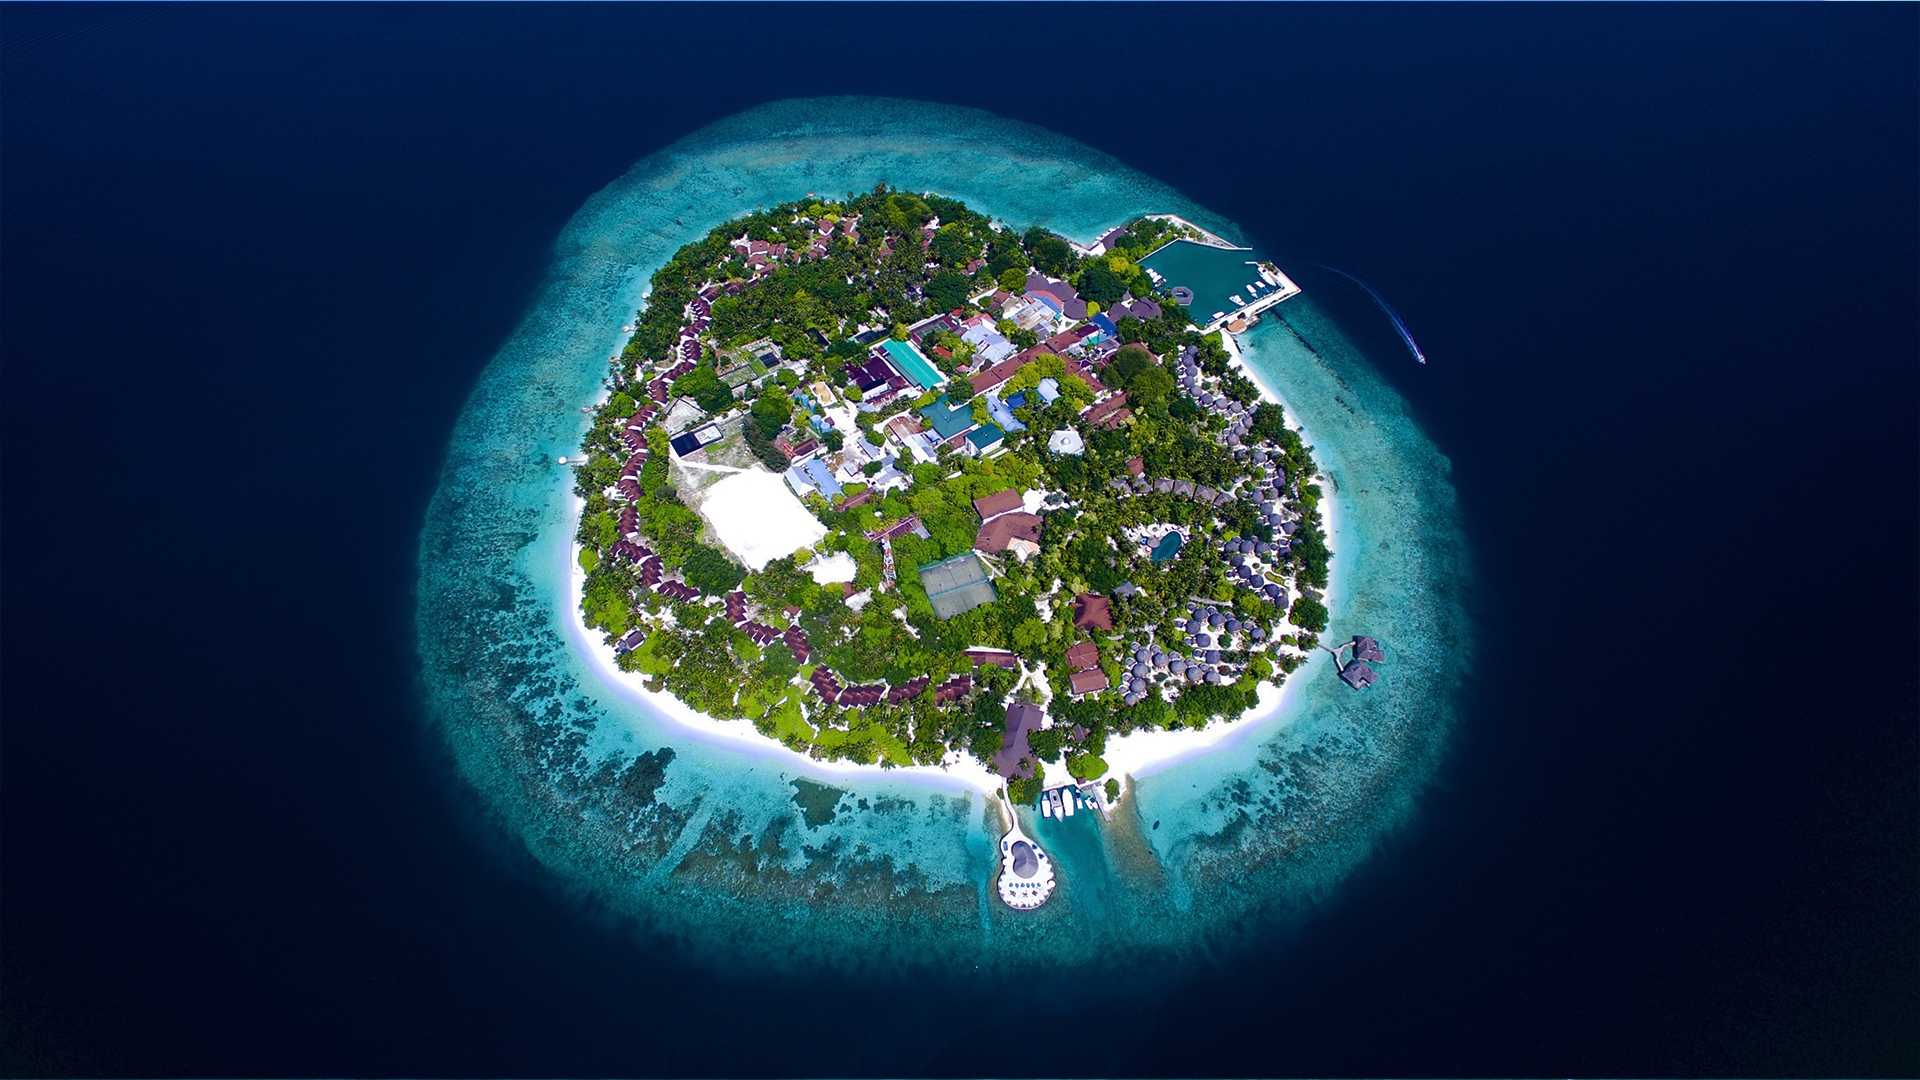 Bandos maldives